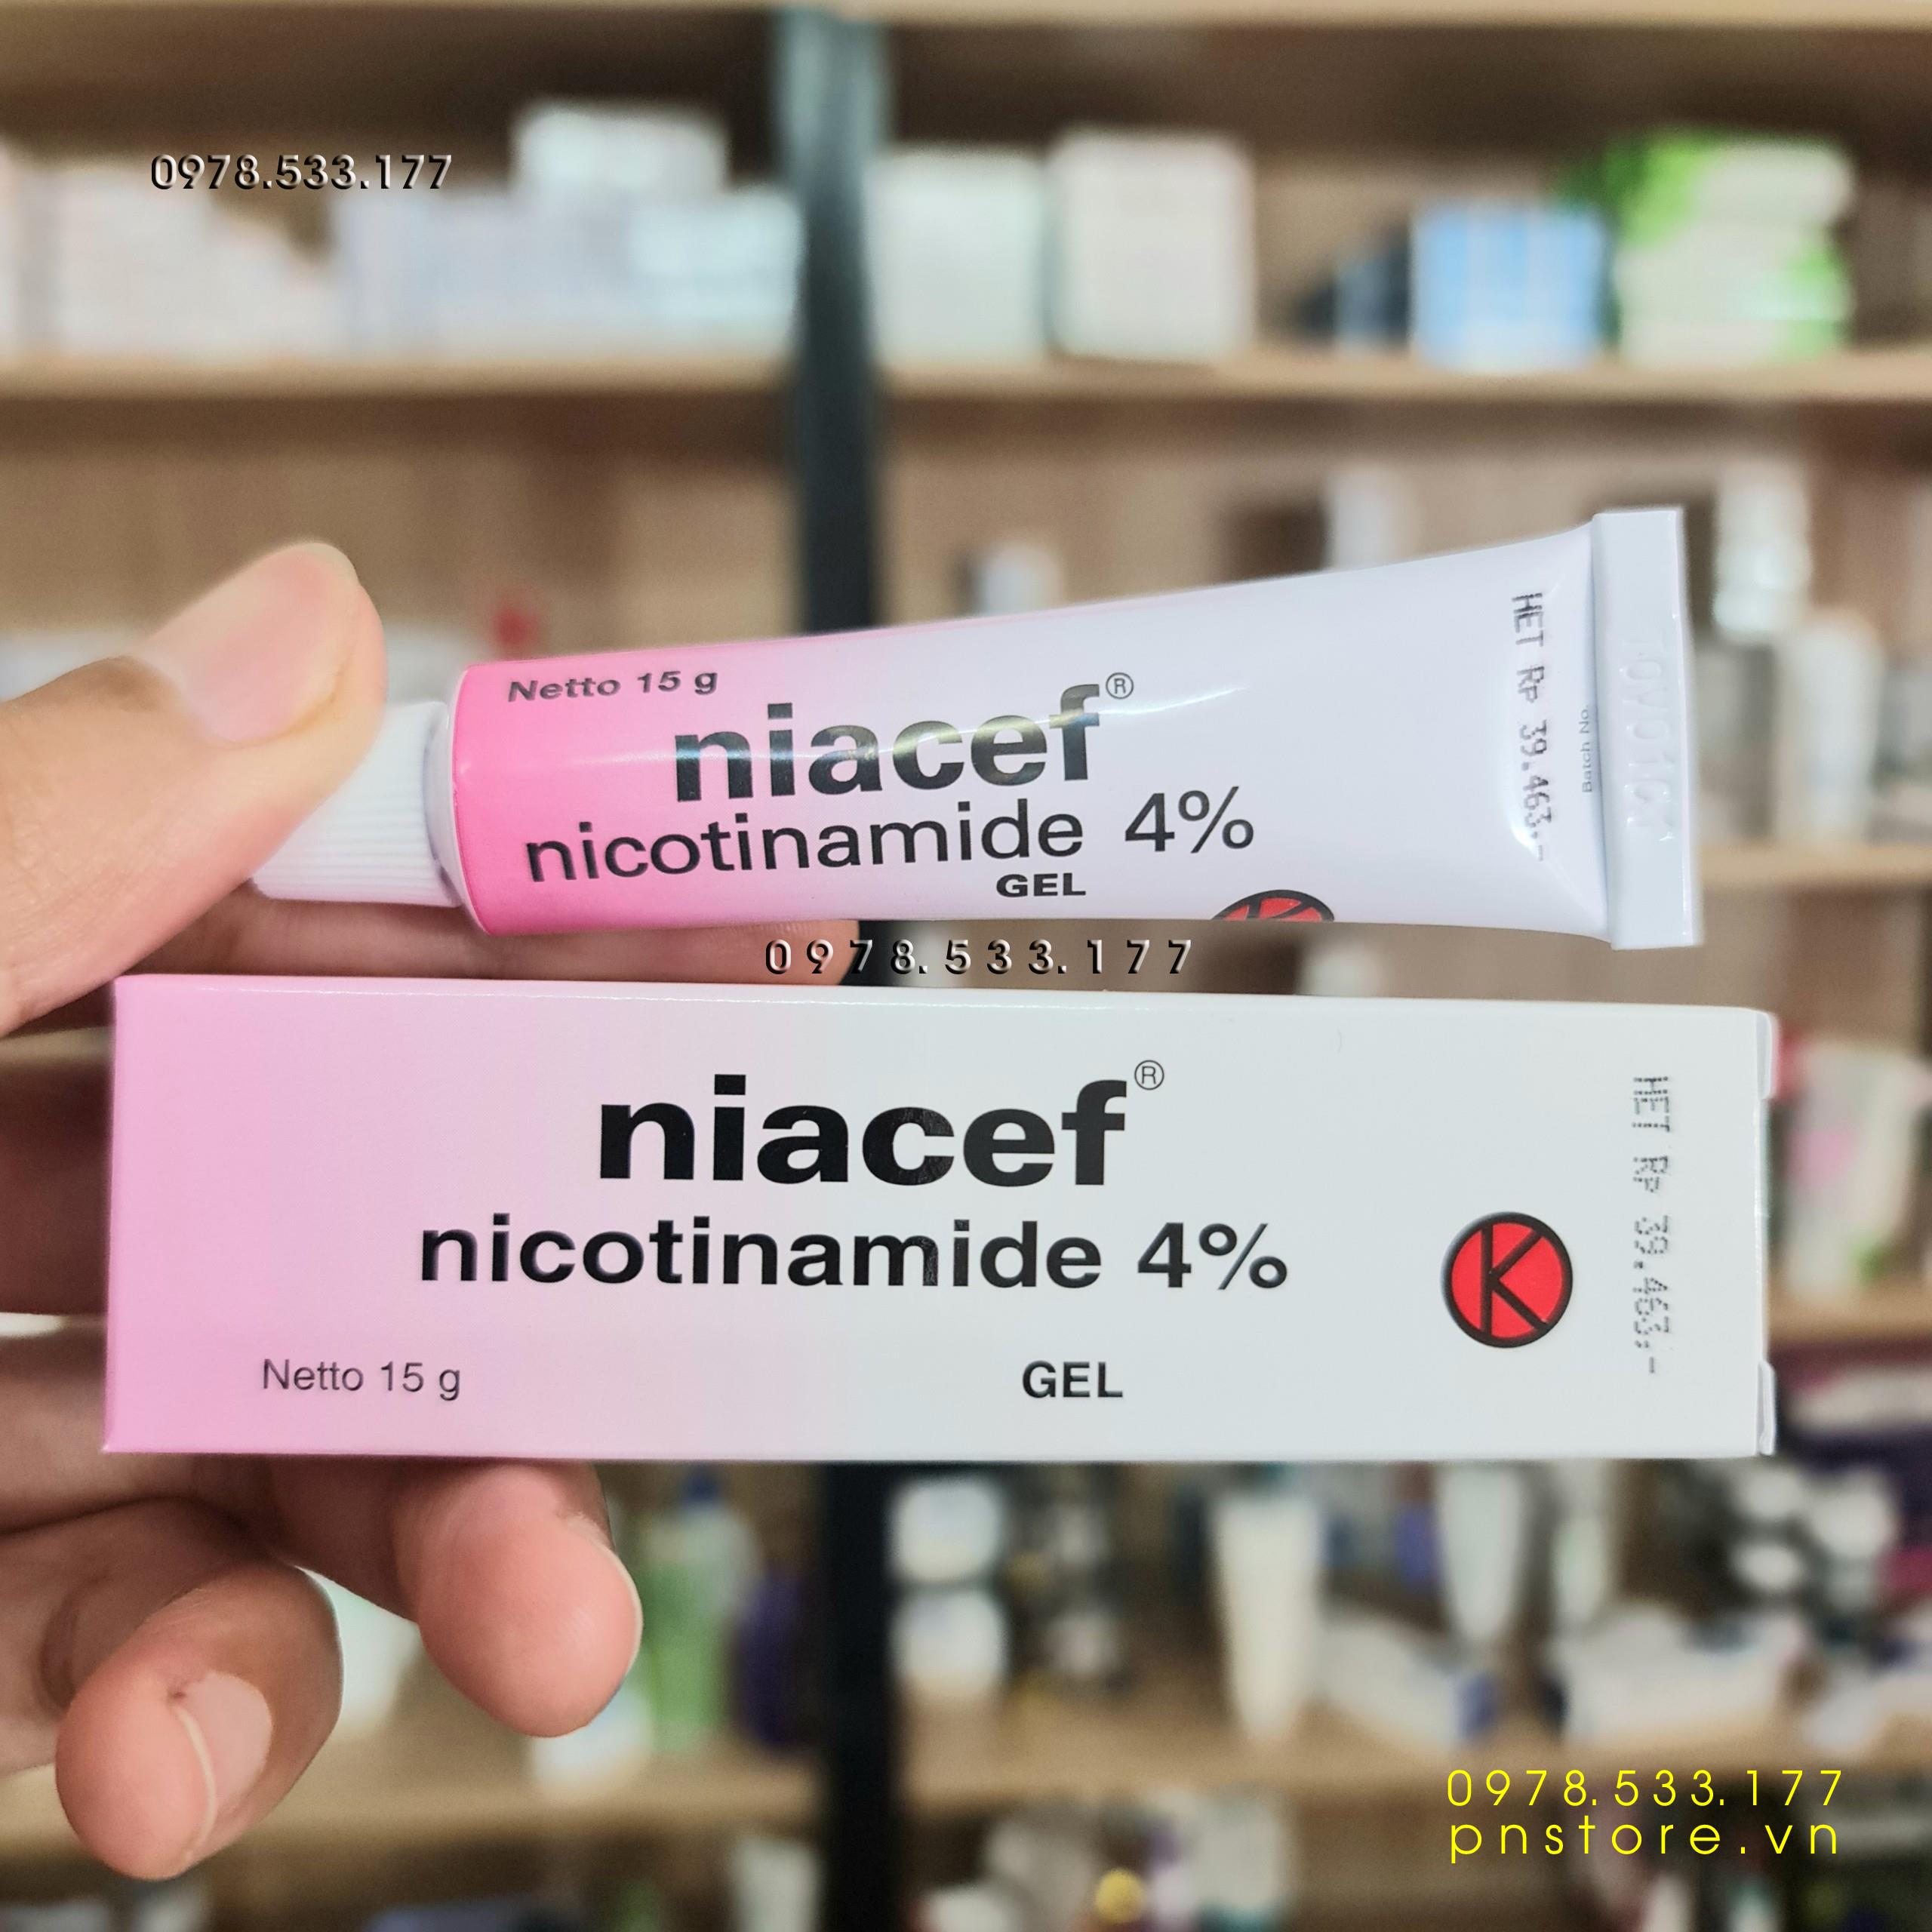 [15g] Gel Niacef Nicotinamide 4% chính hãng - PN100160